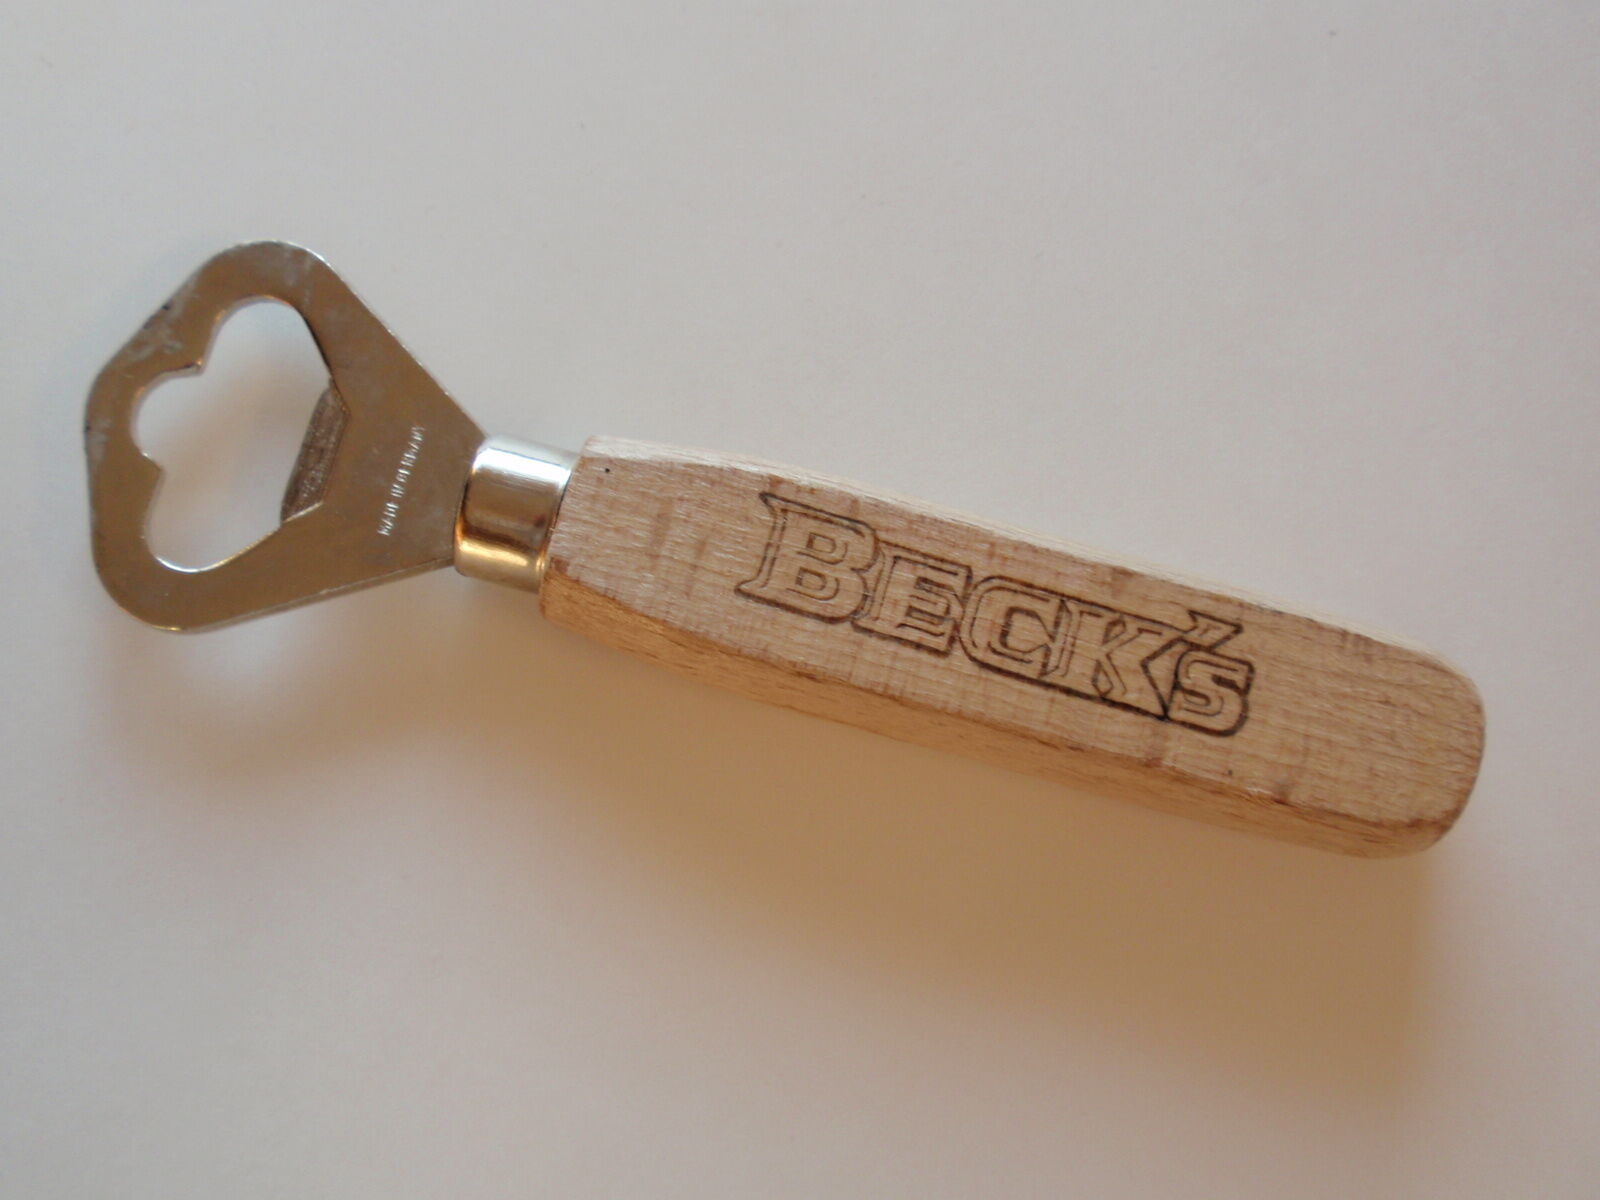 Wood Handled Becks Beer Bottle Opener Made in Germany Sturdy Barware Gadget Tool